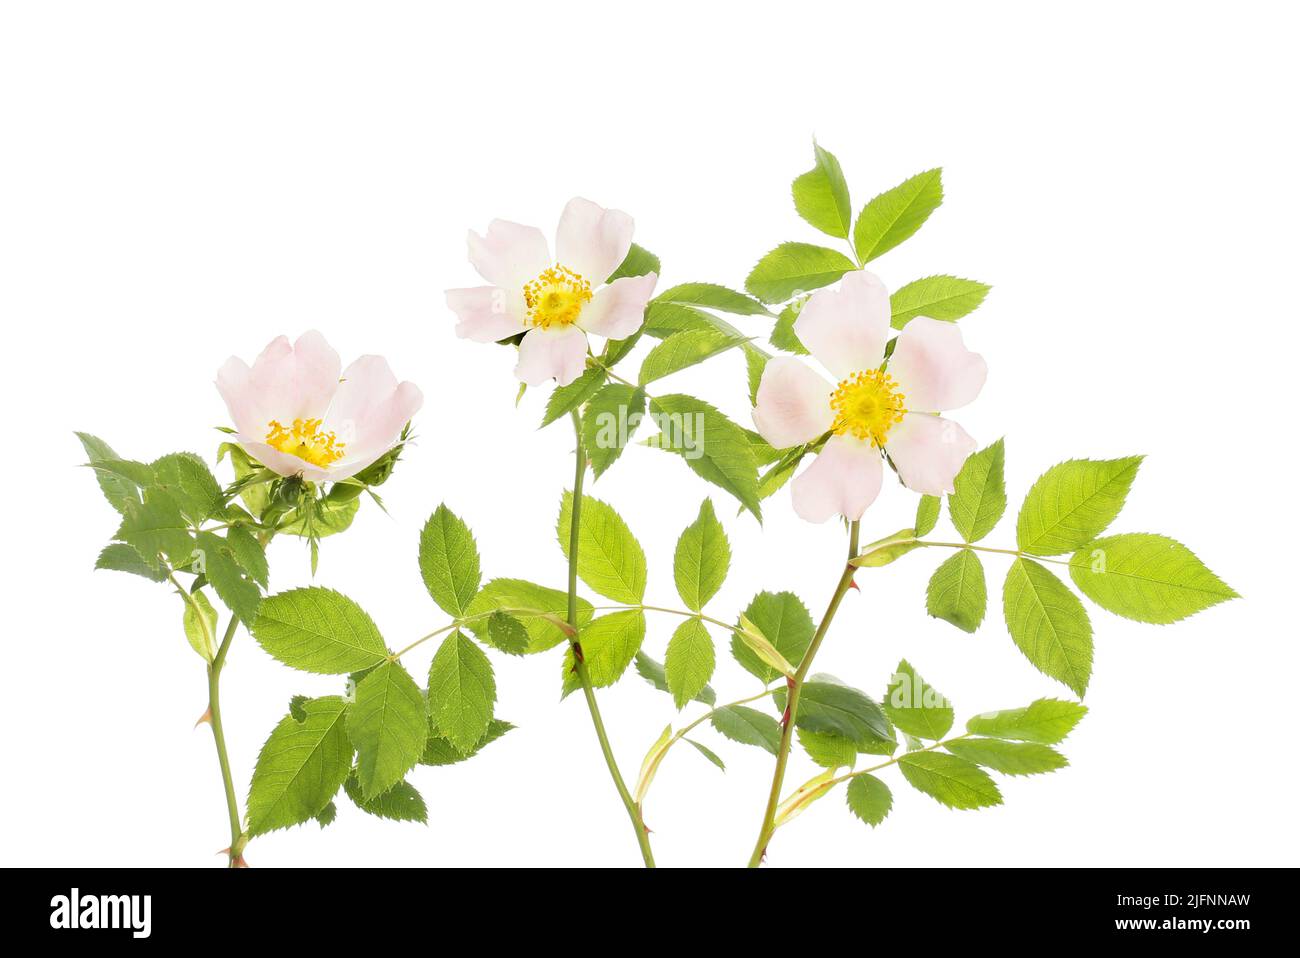 Rosa canina, rosa canina, fiori e fogliame isolato contro bianco Foto Stock